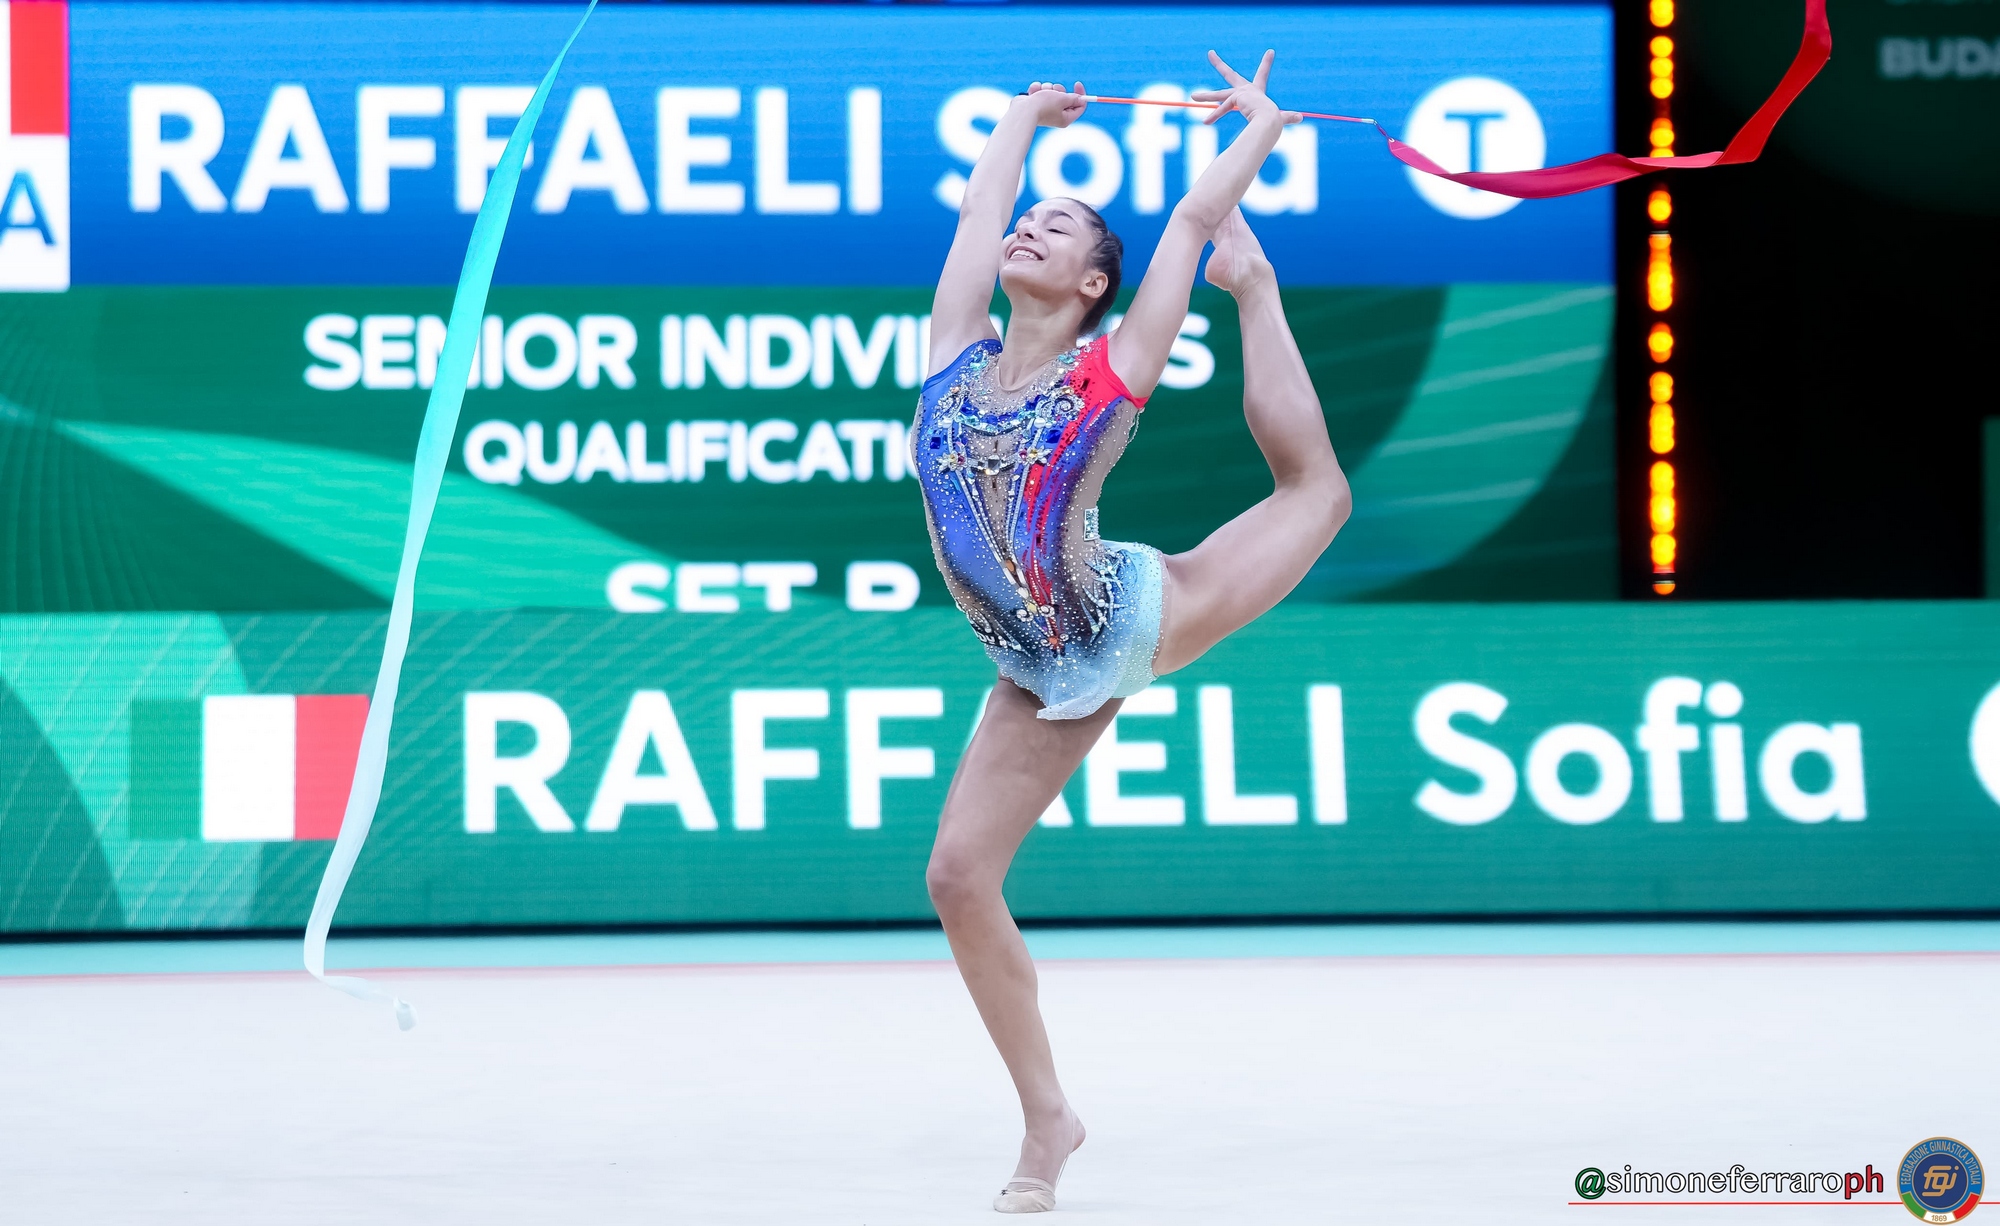 Sofia Raffaeli